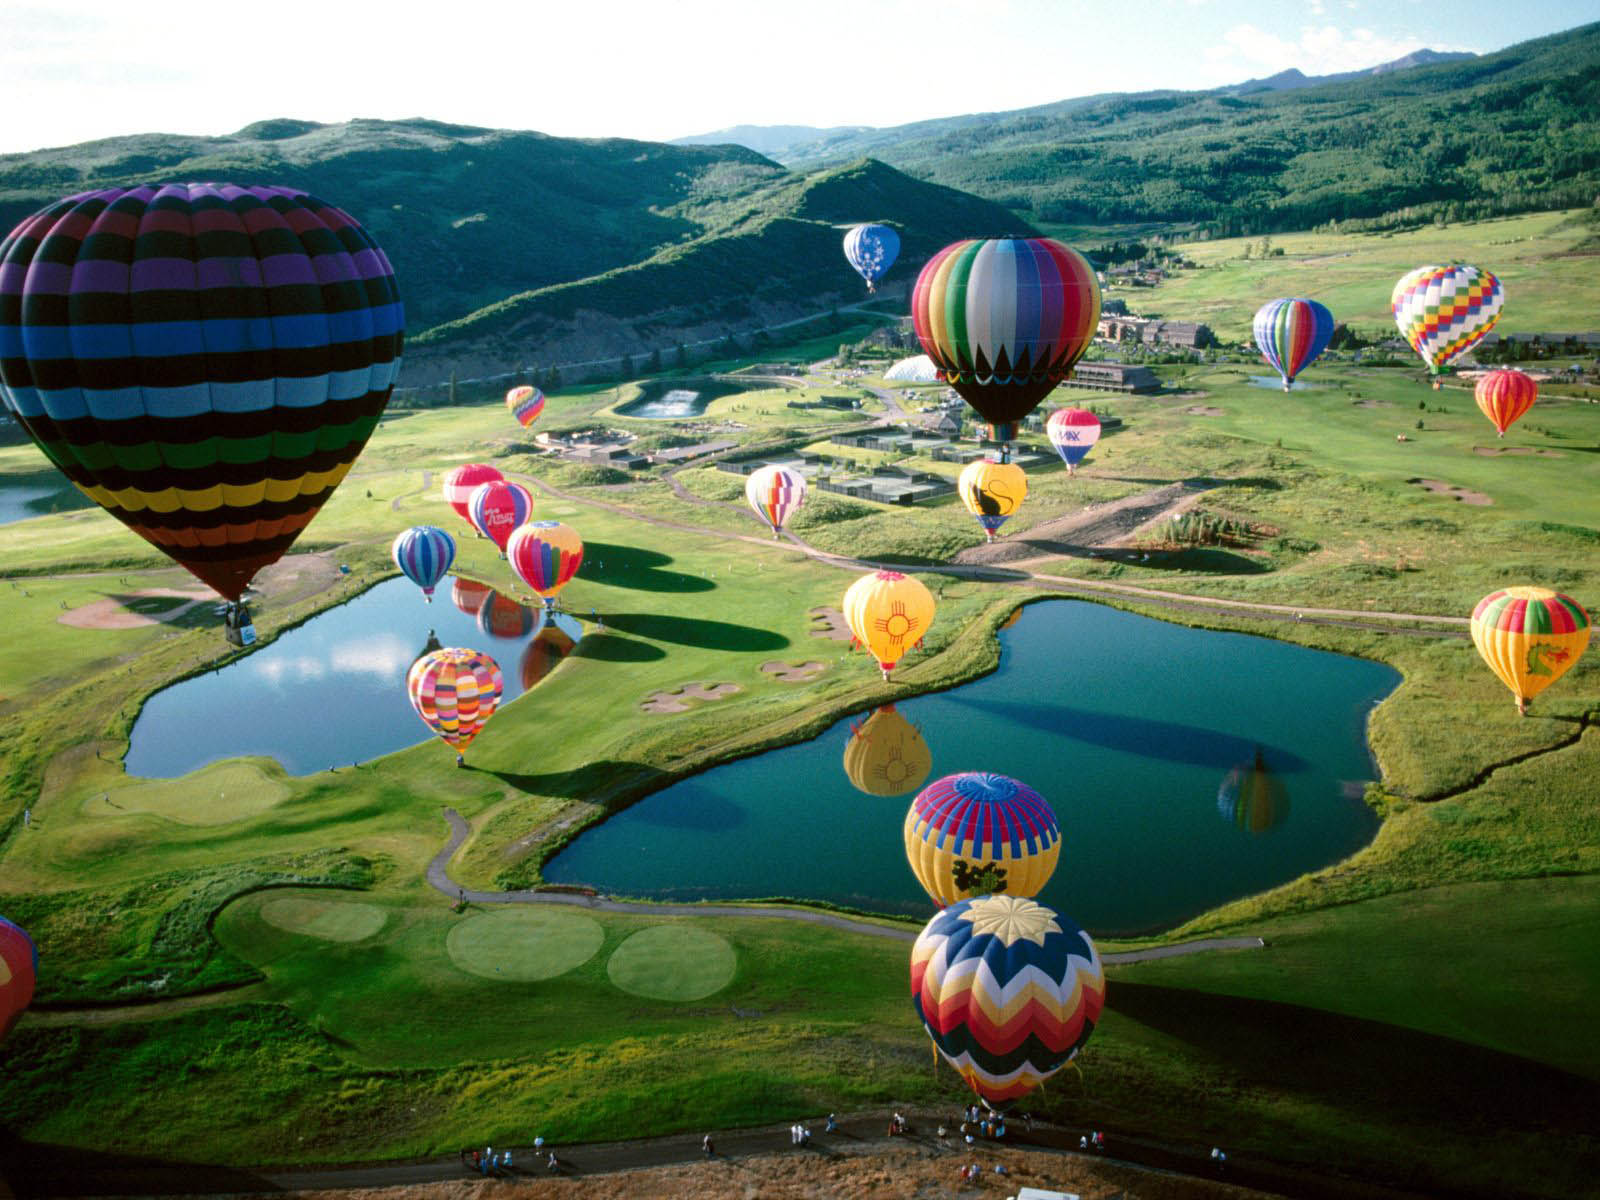 wallpaper balon udara,hot air ballooning,nature,hot air balloon,natural landscape,natural environment